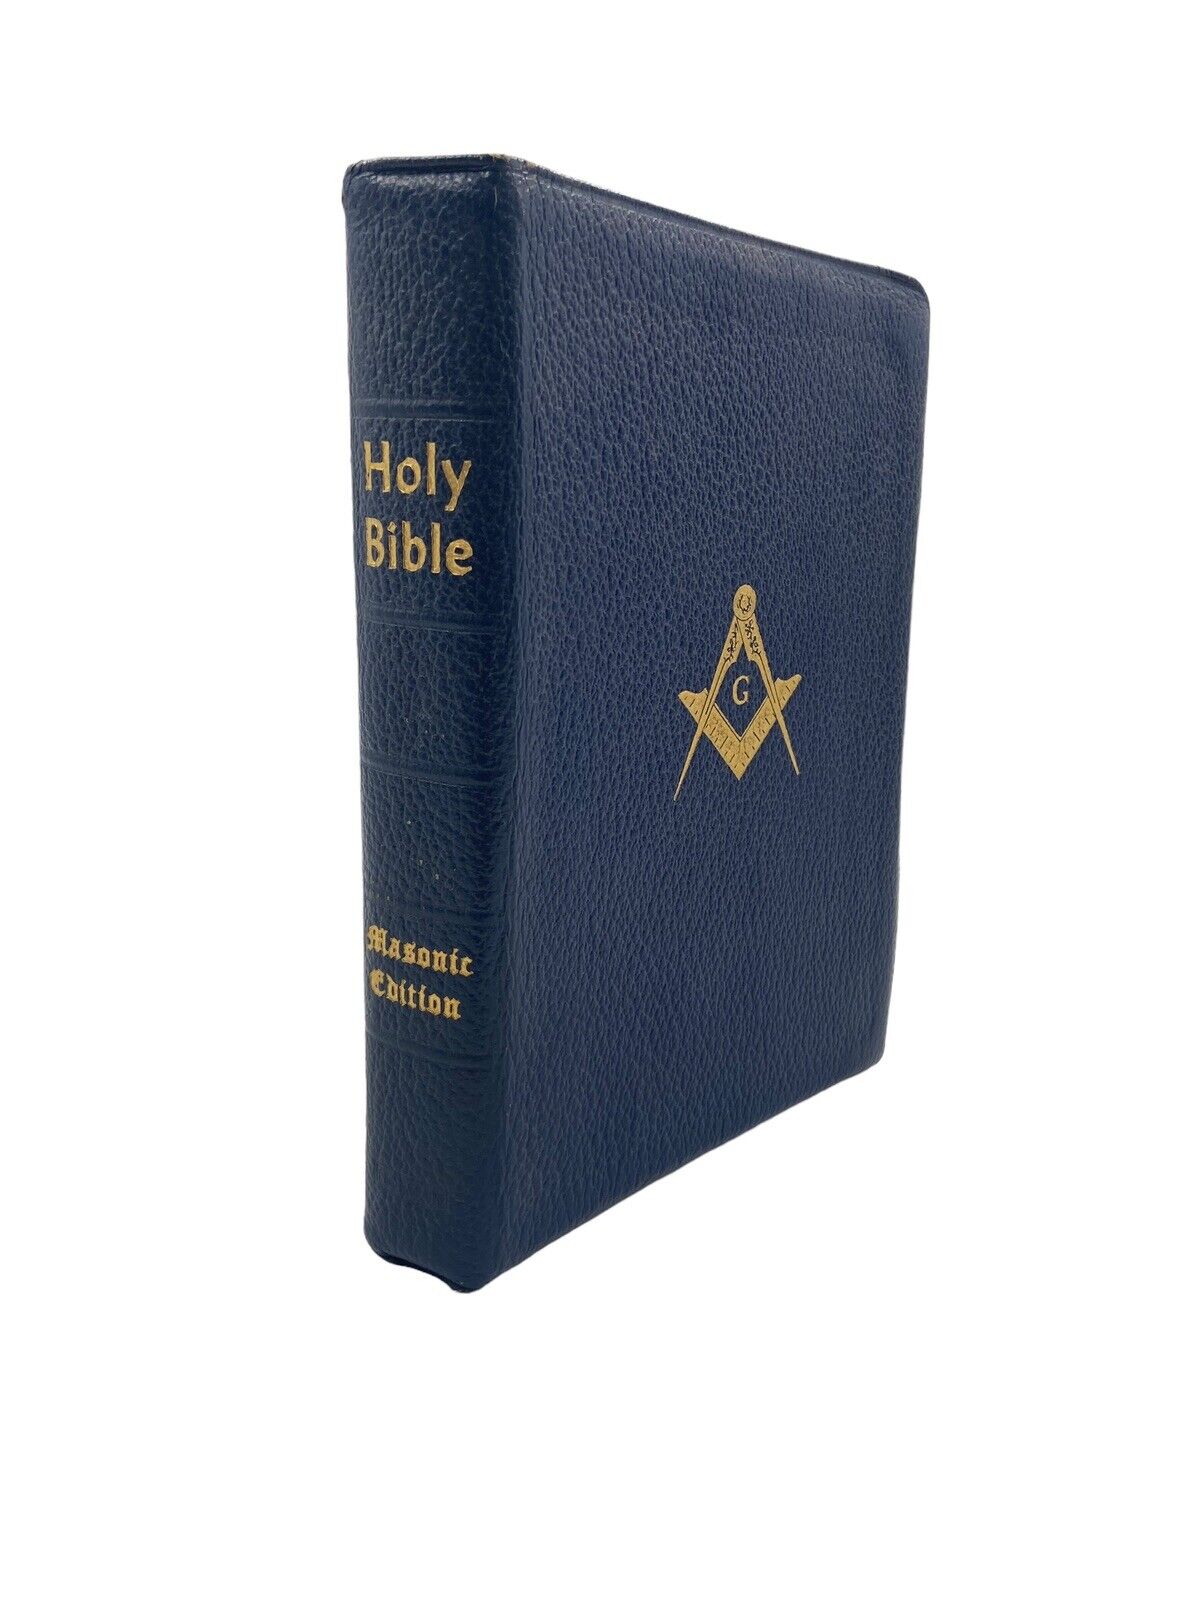 Masonic Edition Leather Holy Bible 1957 Holman Blue Mason Masonry  USA